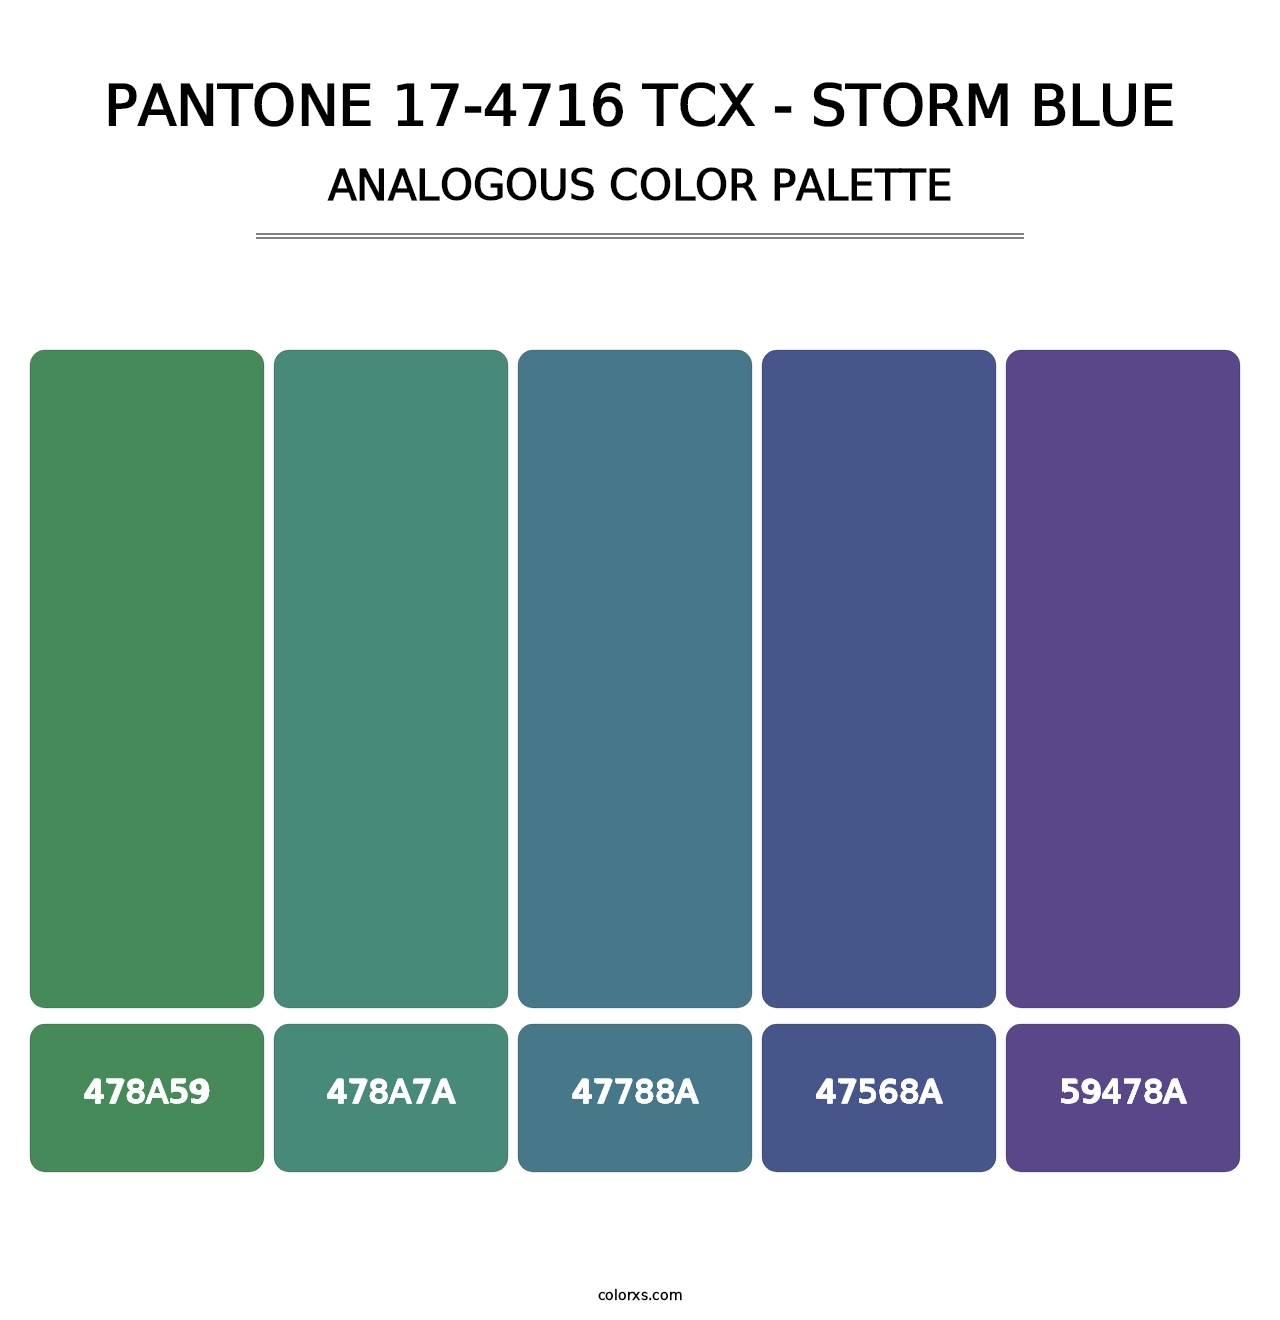 PANTONE 17-4716 TCX - Storm Blue - Analogous Color Palette